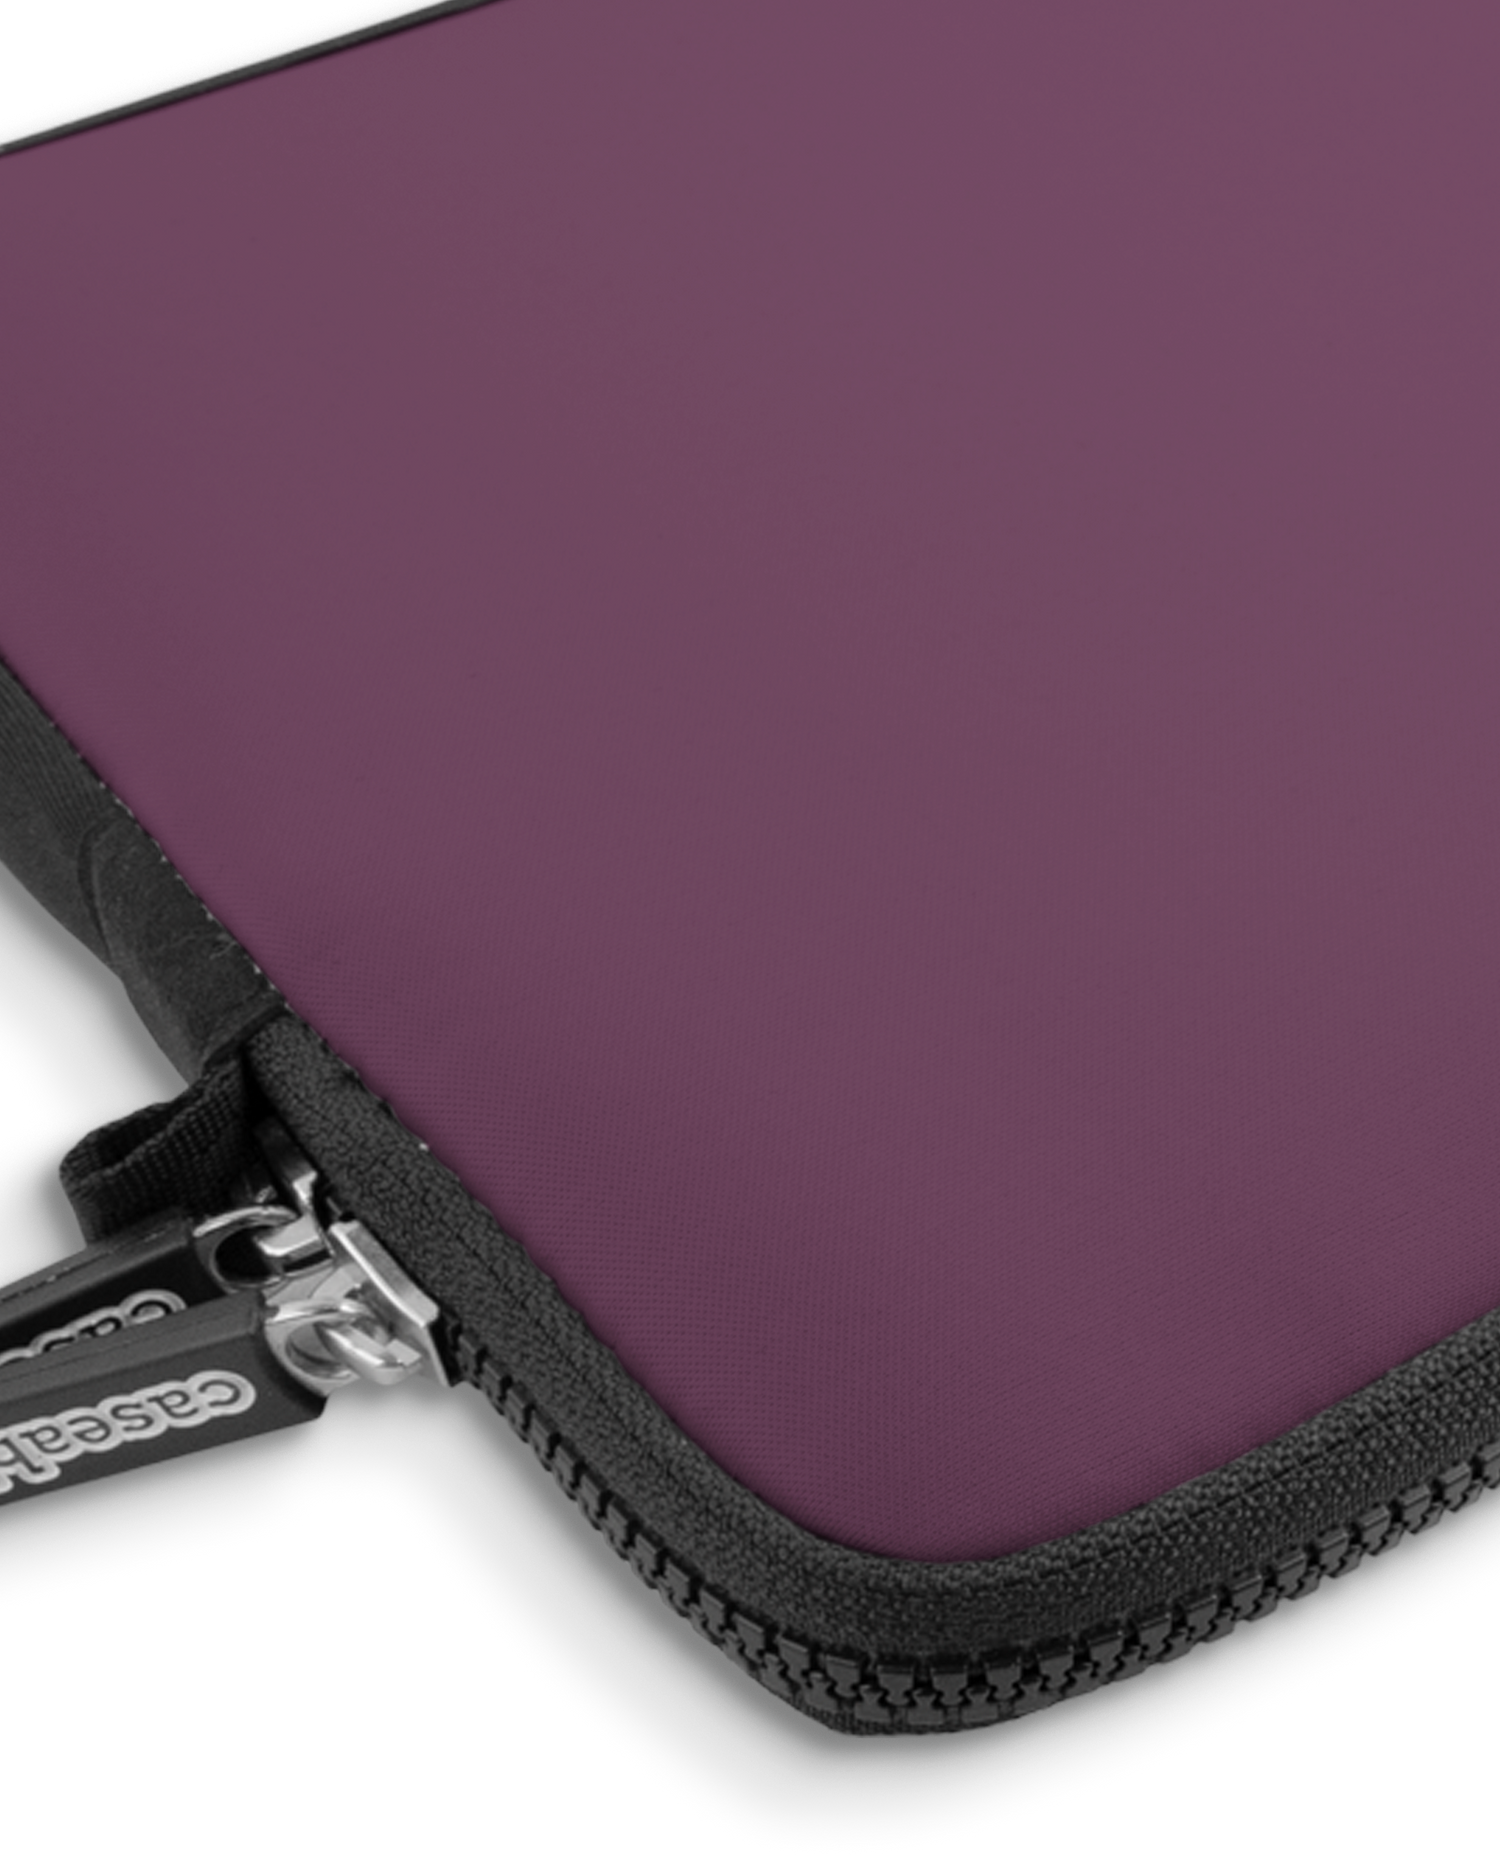 PLUM Premium Laptoptasche 13 Zoll mit Gerät im Inneren